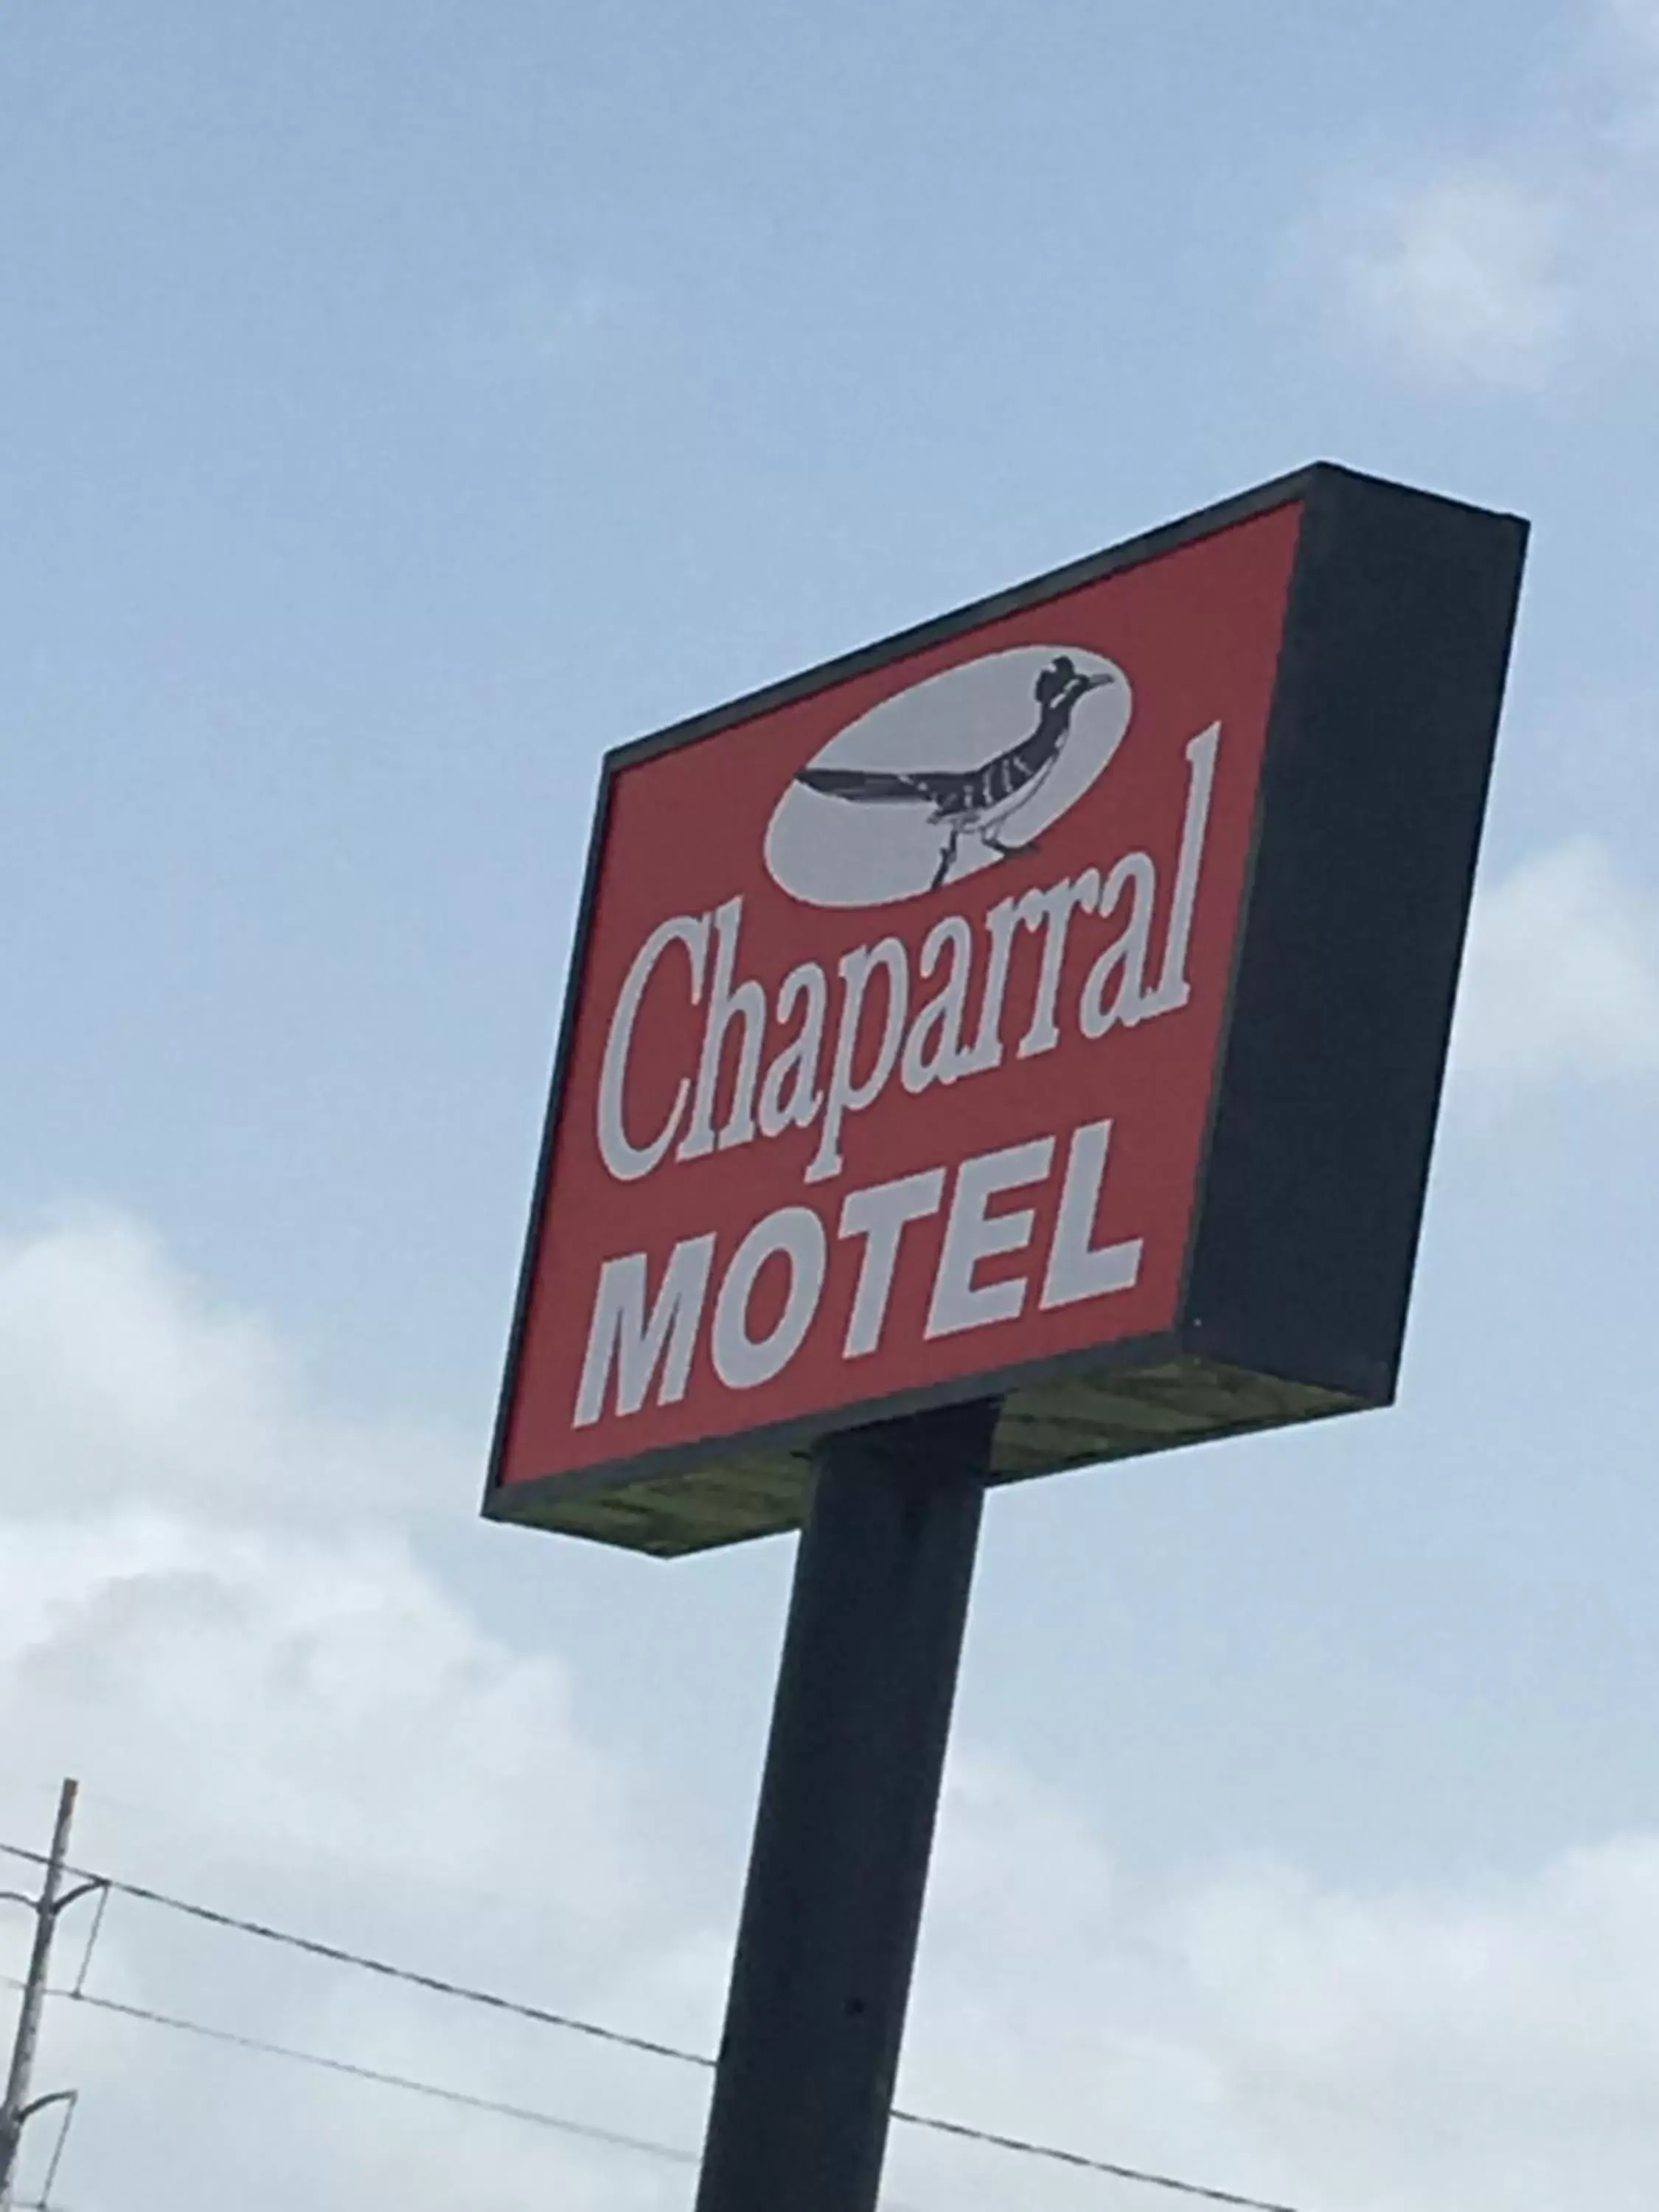 Chaparral Motel